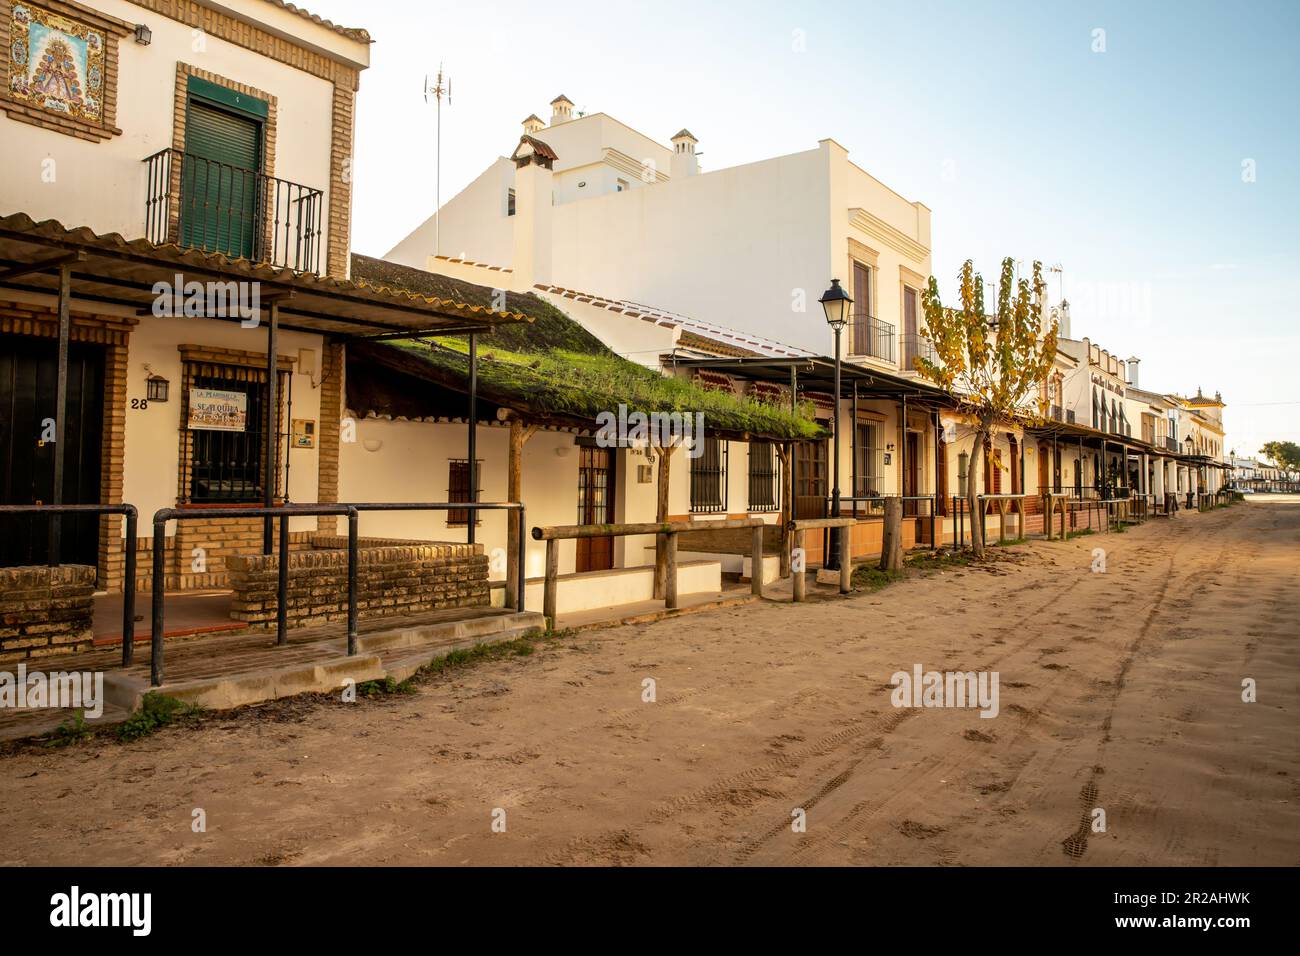 Vista de la arquitectura típica y las calles de arena en el pueblo de El Rocío Foto de stock